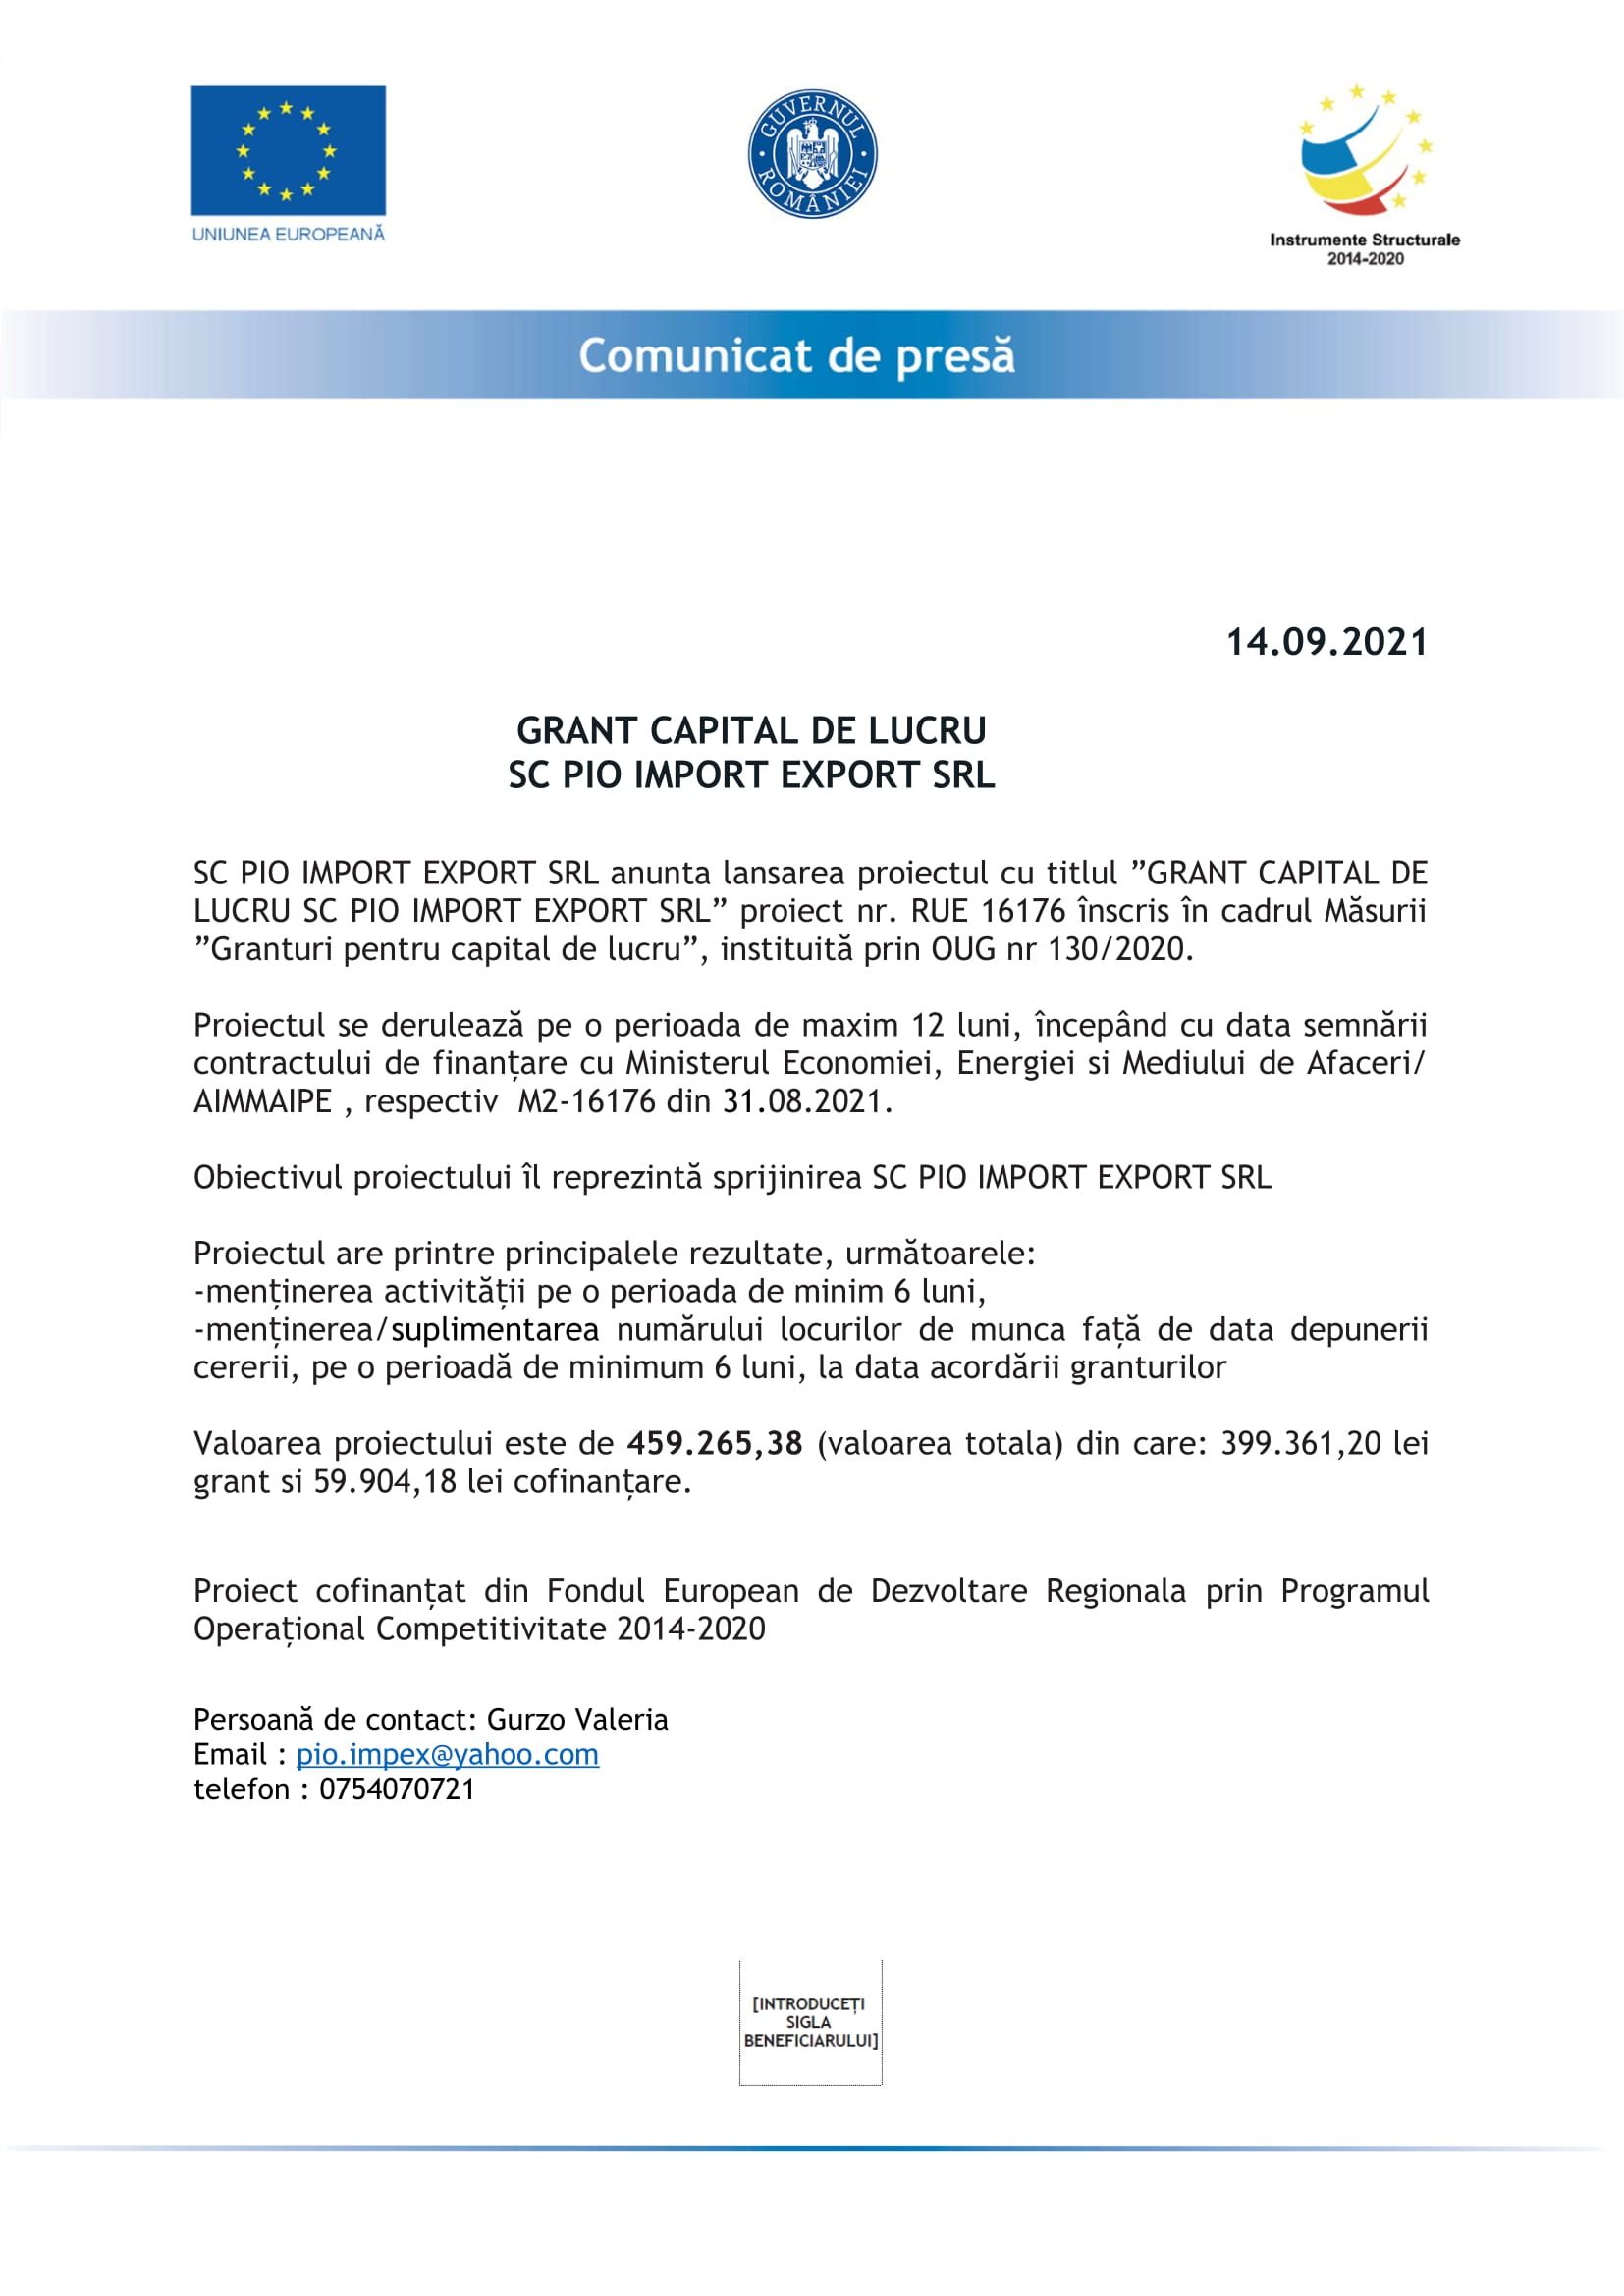 Lansarea proiectul cu titlul ”GRANT CAPITAL DE LUCRU SC PIO IMPORT EXPORT SRL”